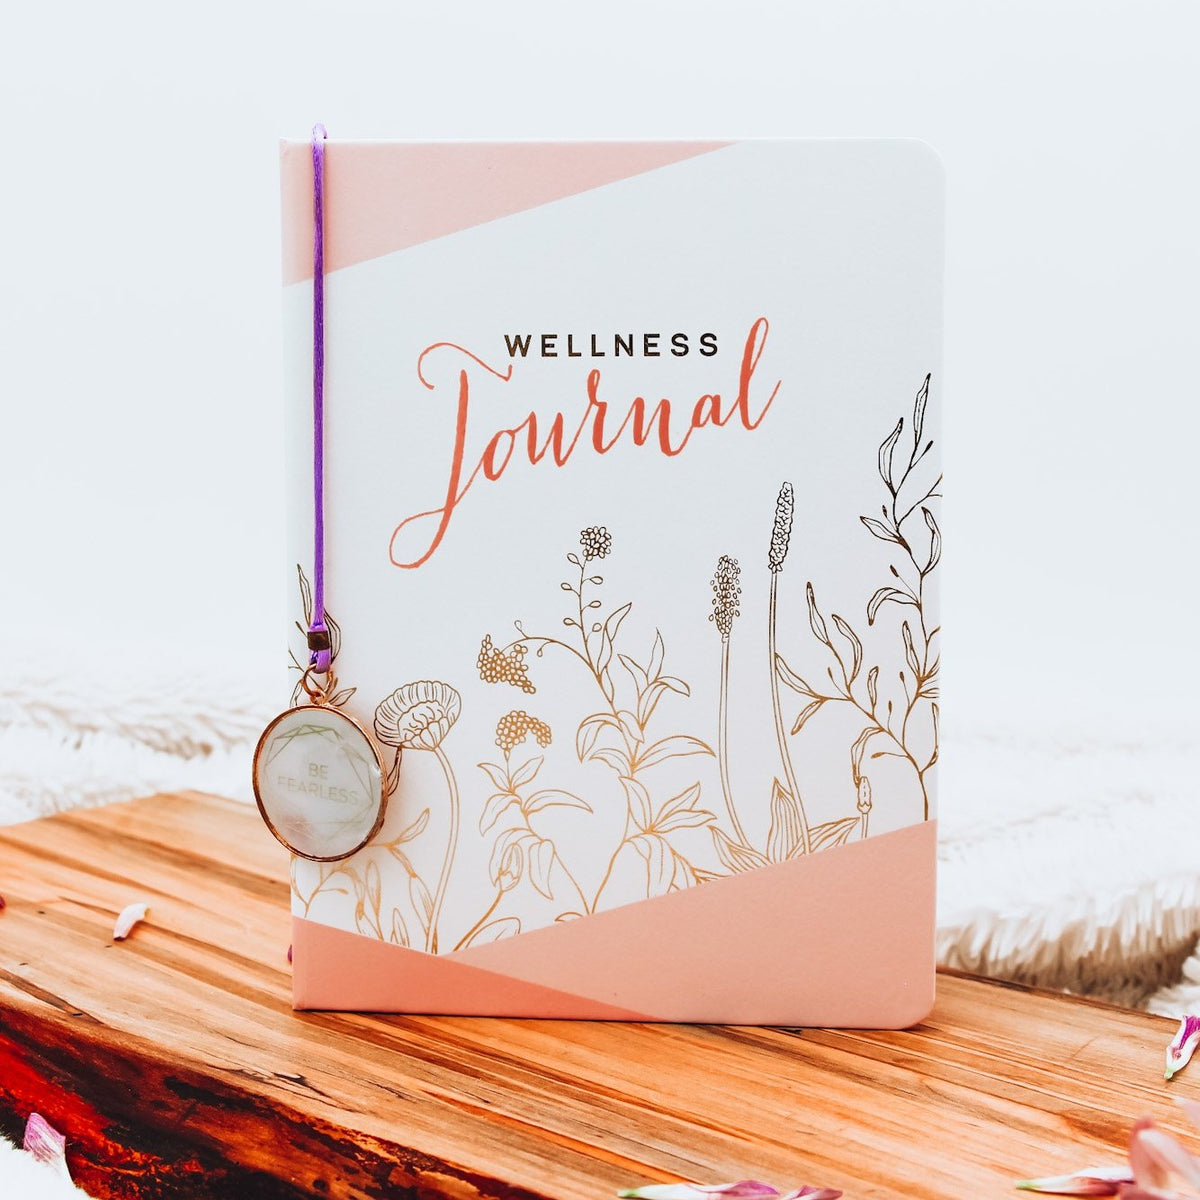 wellness journal, wellness diary, wellness gift set, calming gift ideas, relaxation items, undated wellness journal, mental wellness journal